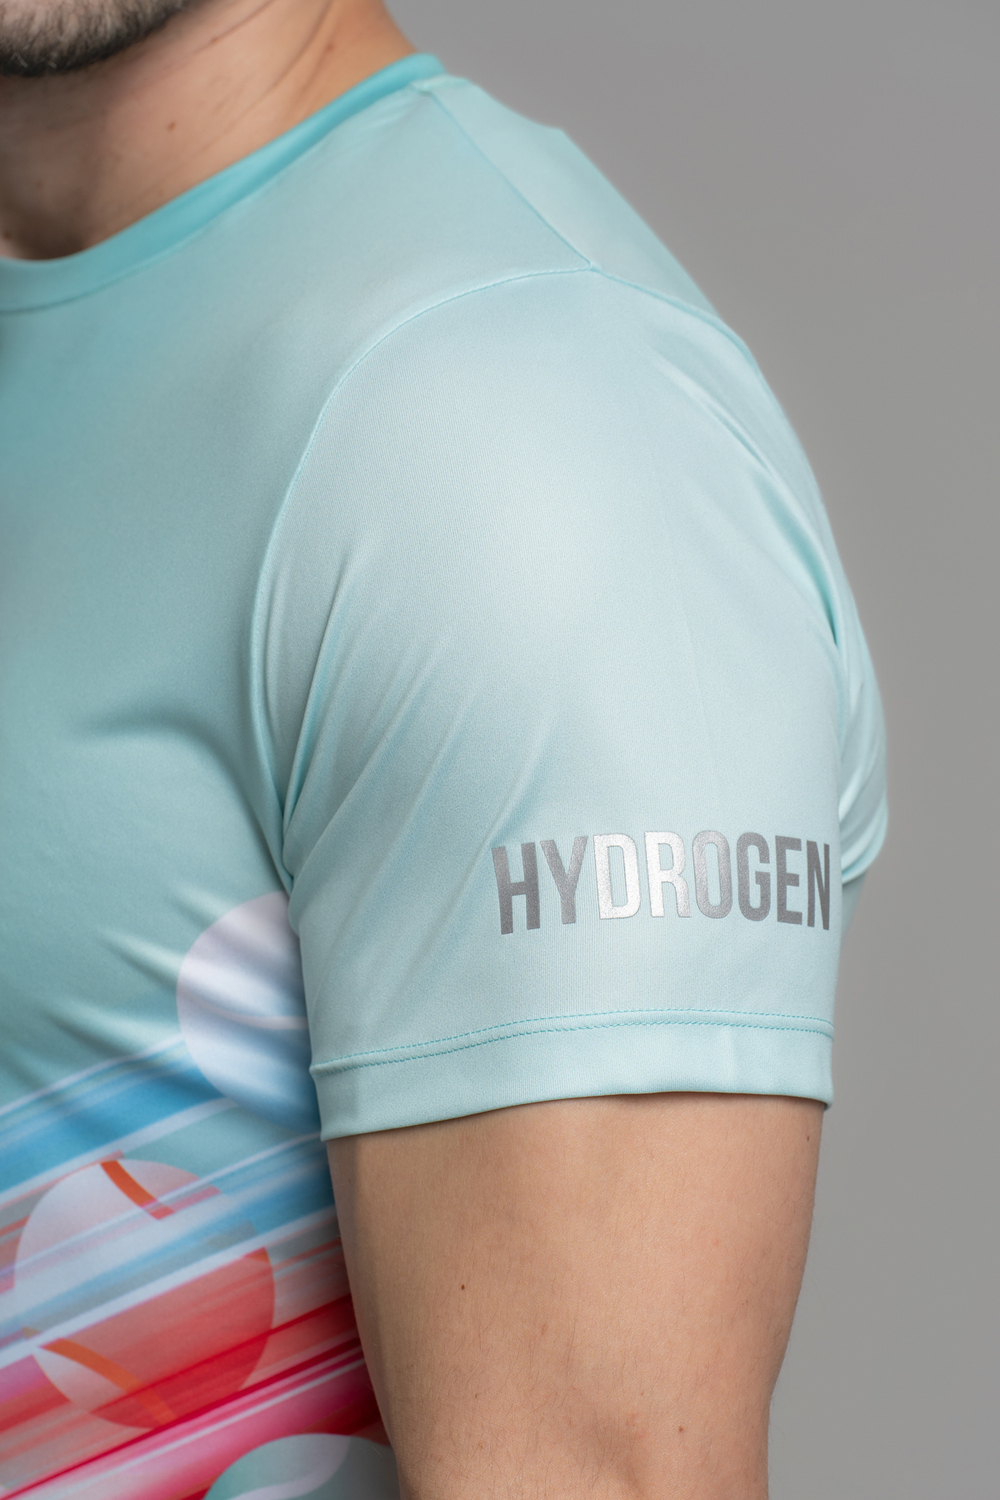 Мужская футболка HYDROGEN FLASH BALLS TECH T-SHIRT (T00832-003)